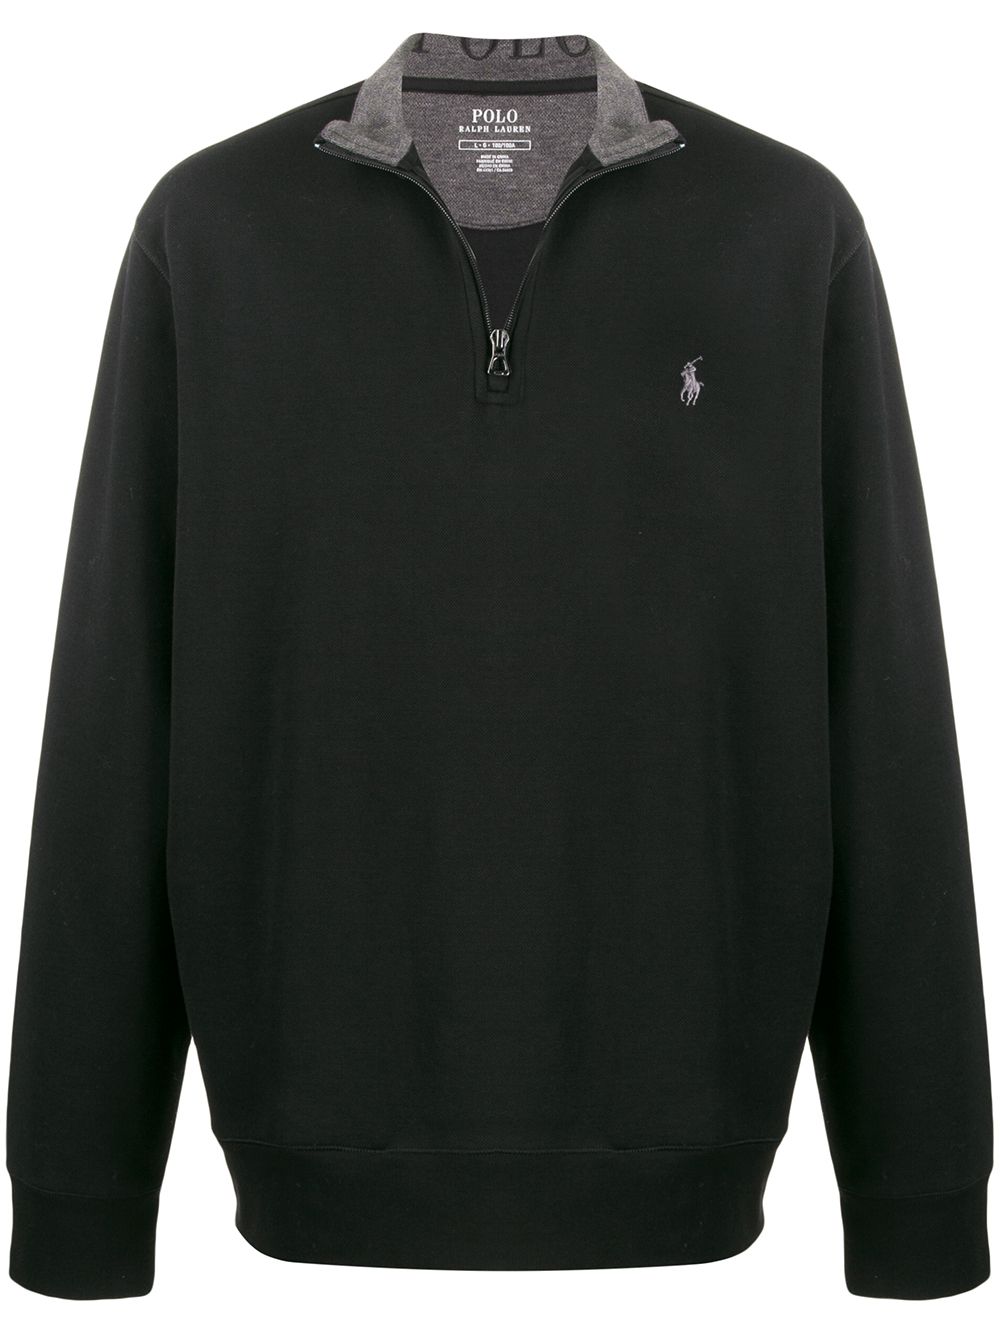 фото Polo Ralph Lauren свитер с воротником на молнии и логотипом